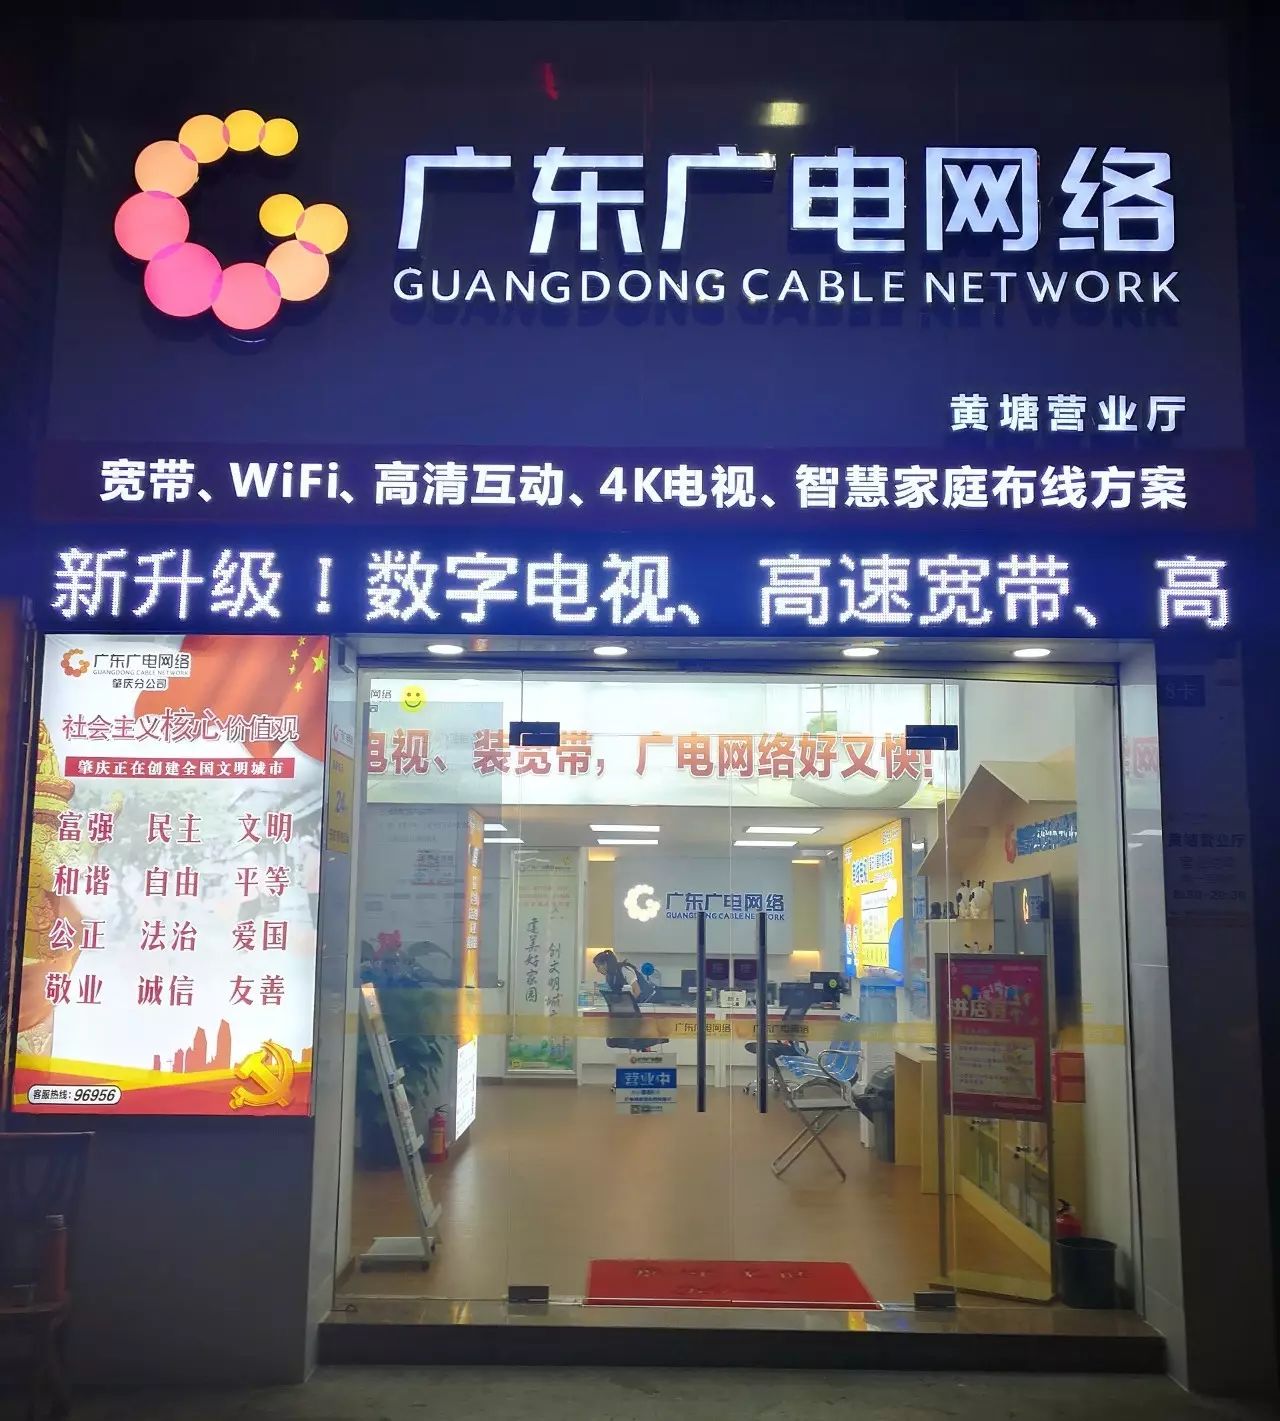 肇庆街坊,这是肇庆广电网络24小时不打烊的营业厅!